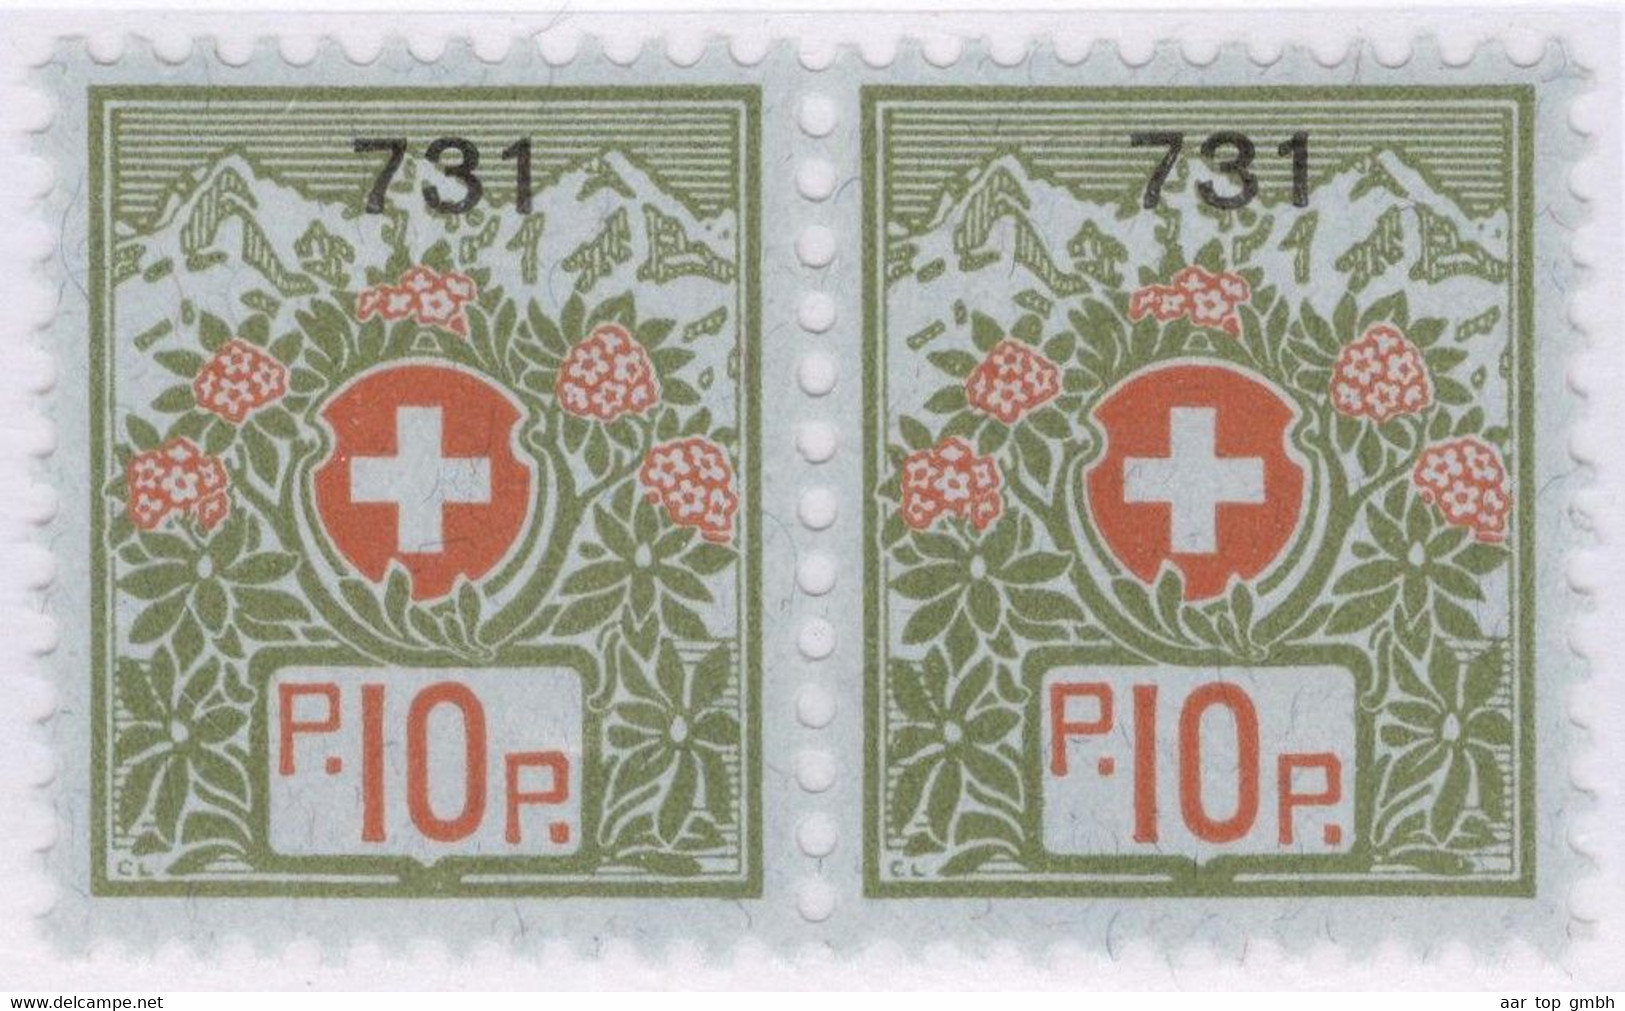 Schweiz Portofreiheit Zu#9 Paar ** Postfrisch 10Rp. Gr#731 Elisabethen Verein Ausgeliefert 800 Stk. - Portofreiheit